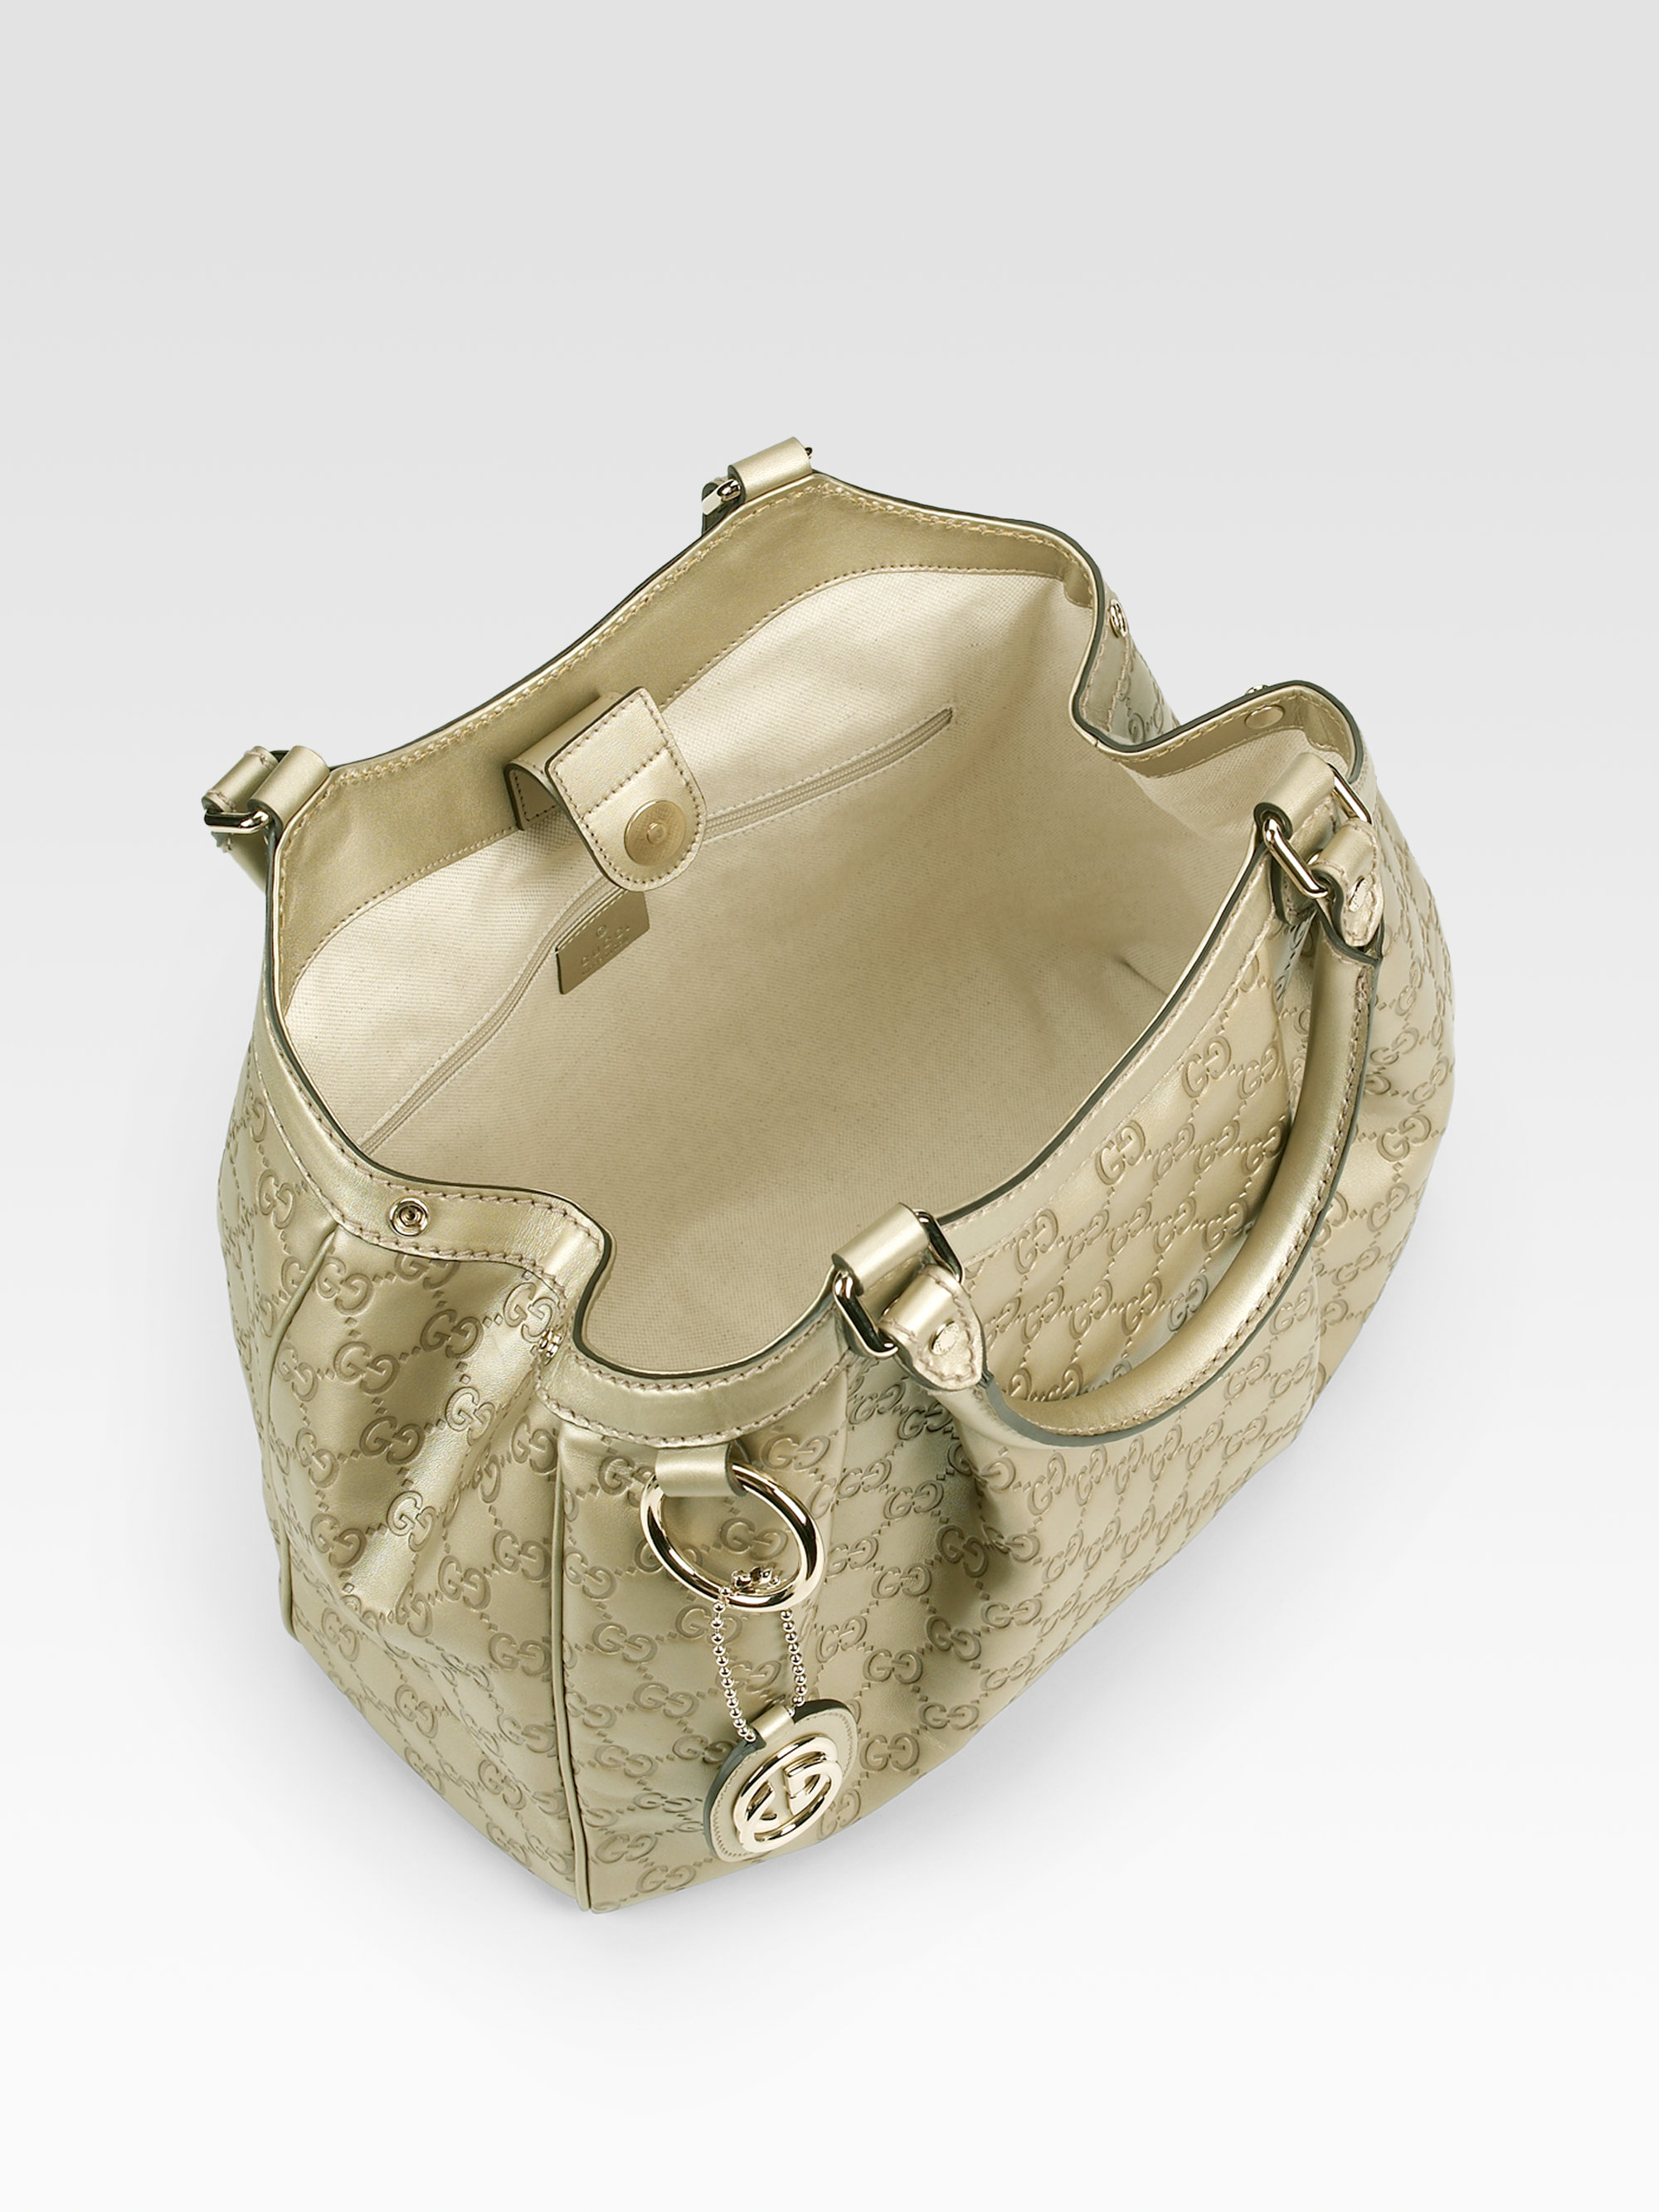 Gucci Sukey Medium Guccissima Tote Bag in Metallic - Lyst